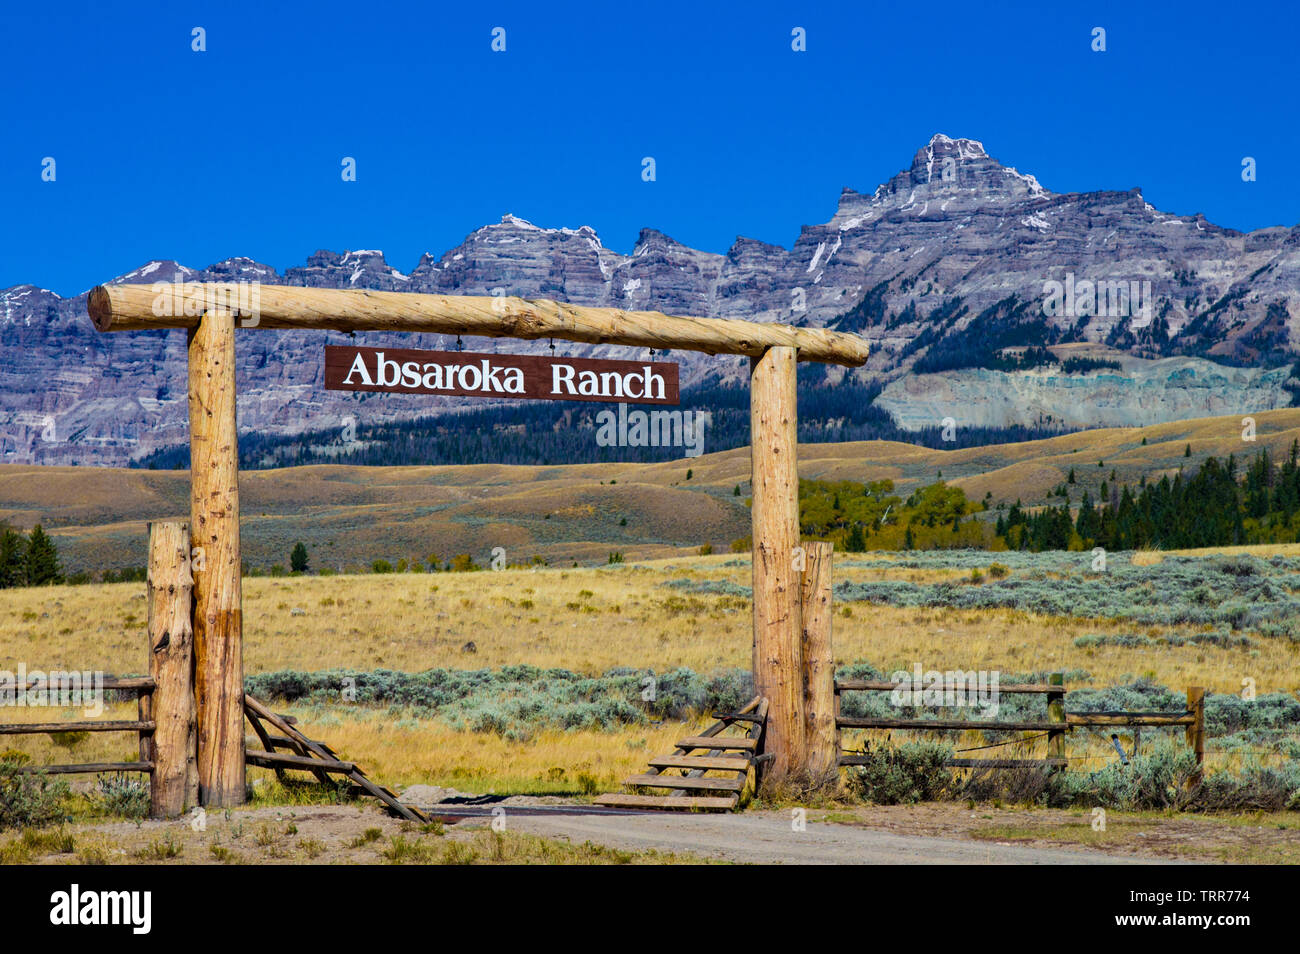 Porte d'entrée d'Absaroka Ranch, de montagnes Absaroka en arrière-plan. Banque D'Images